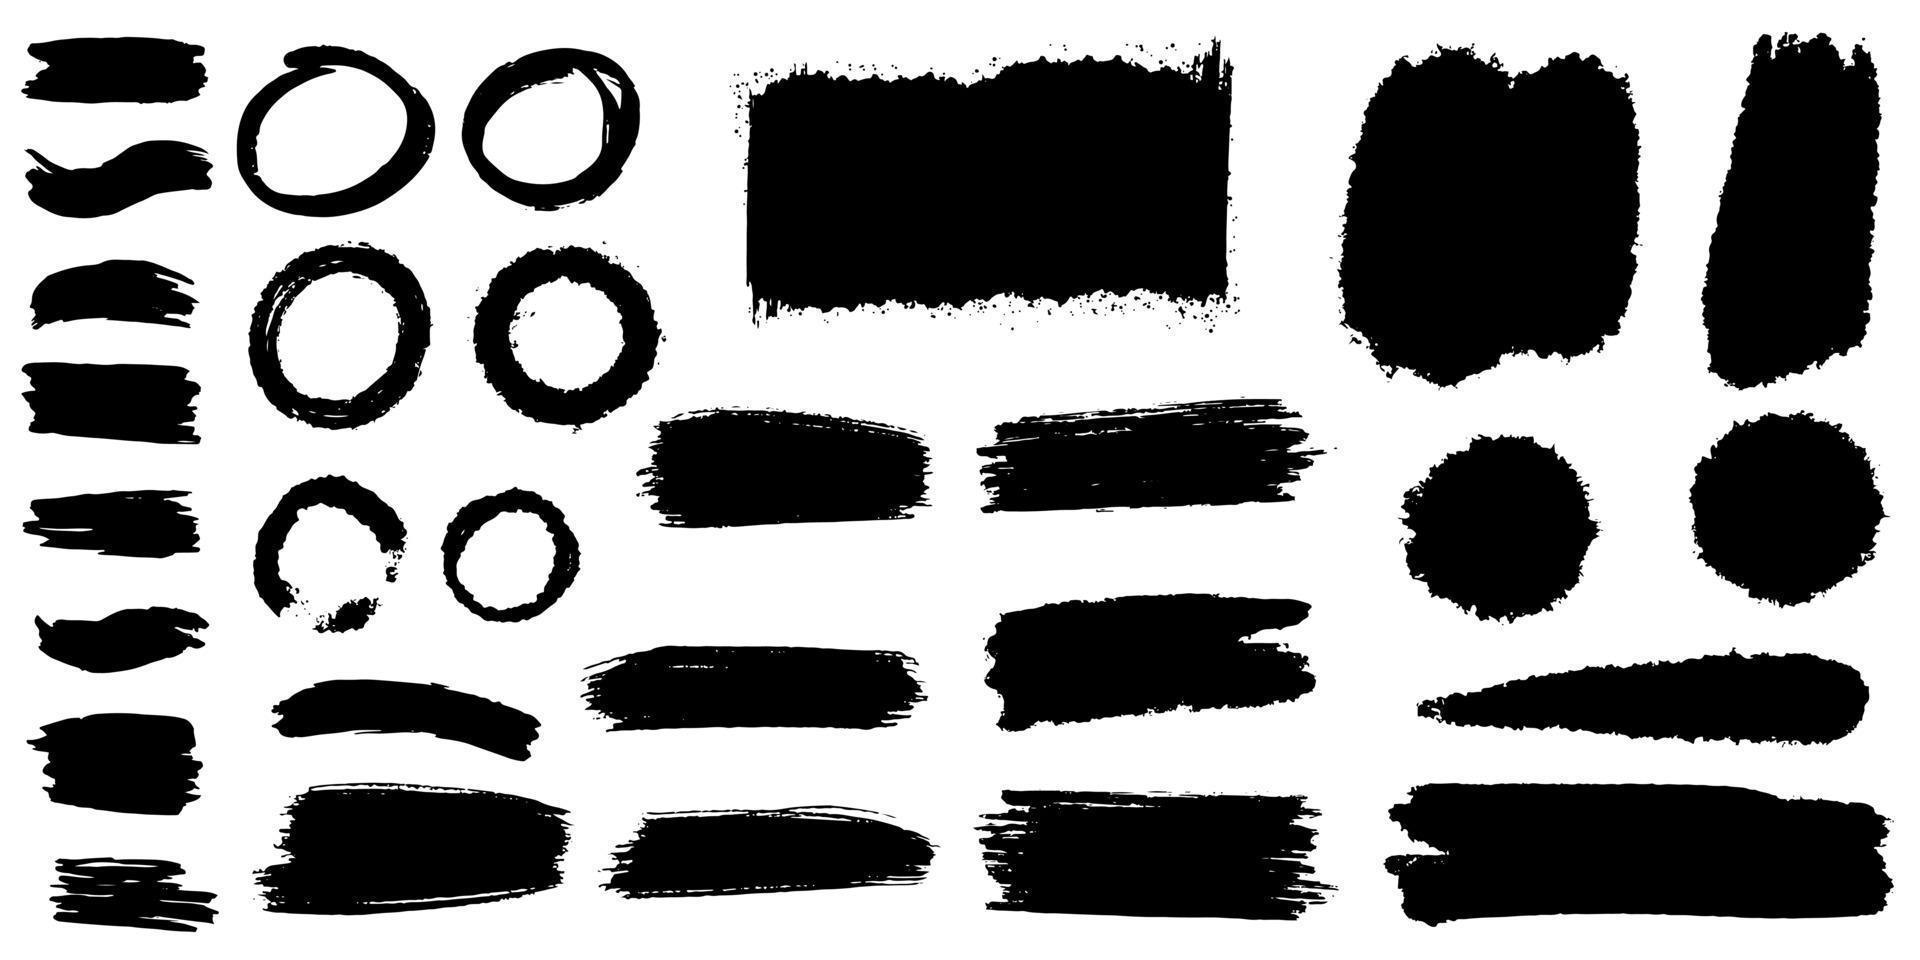 Sammlung von Vektor Pinsel handgezeichnete Grafikelement. Satz von Vektorpinselstrichen isoliert auf weißem Hintergrund. Vektor-Illustration.